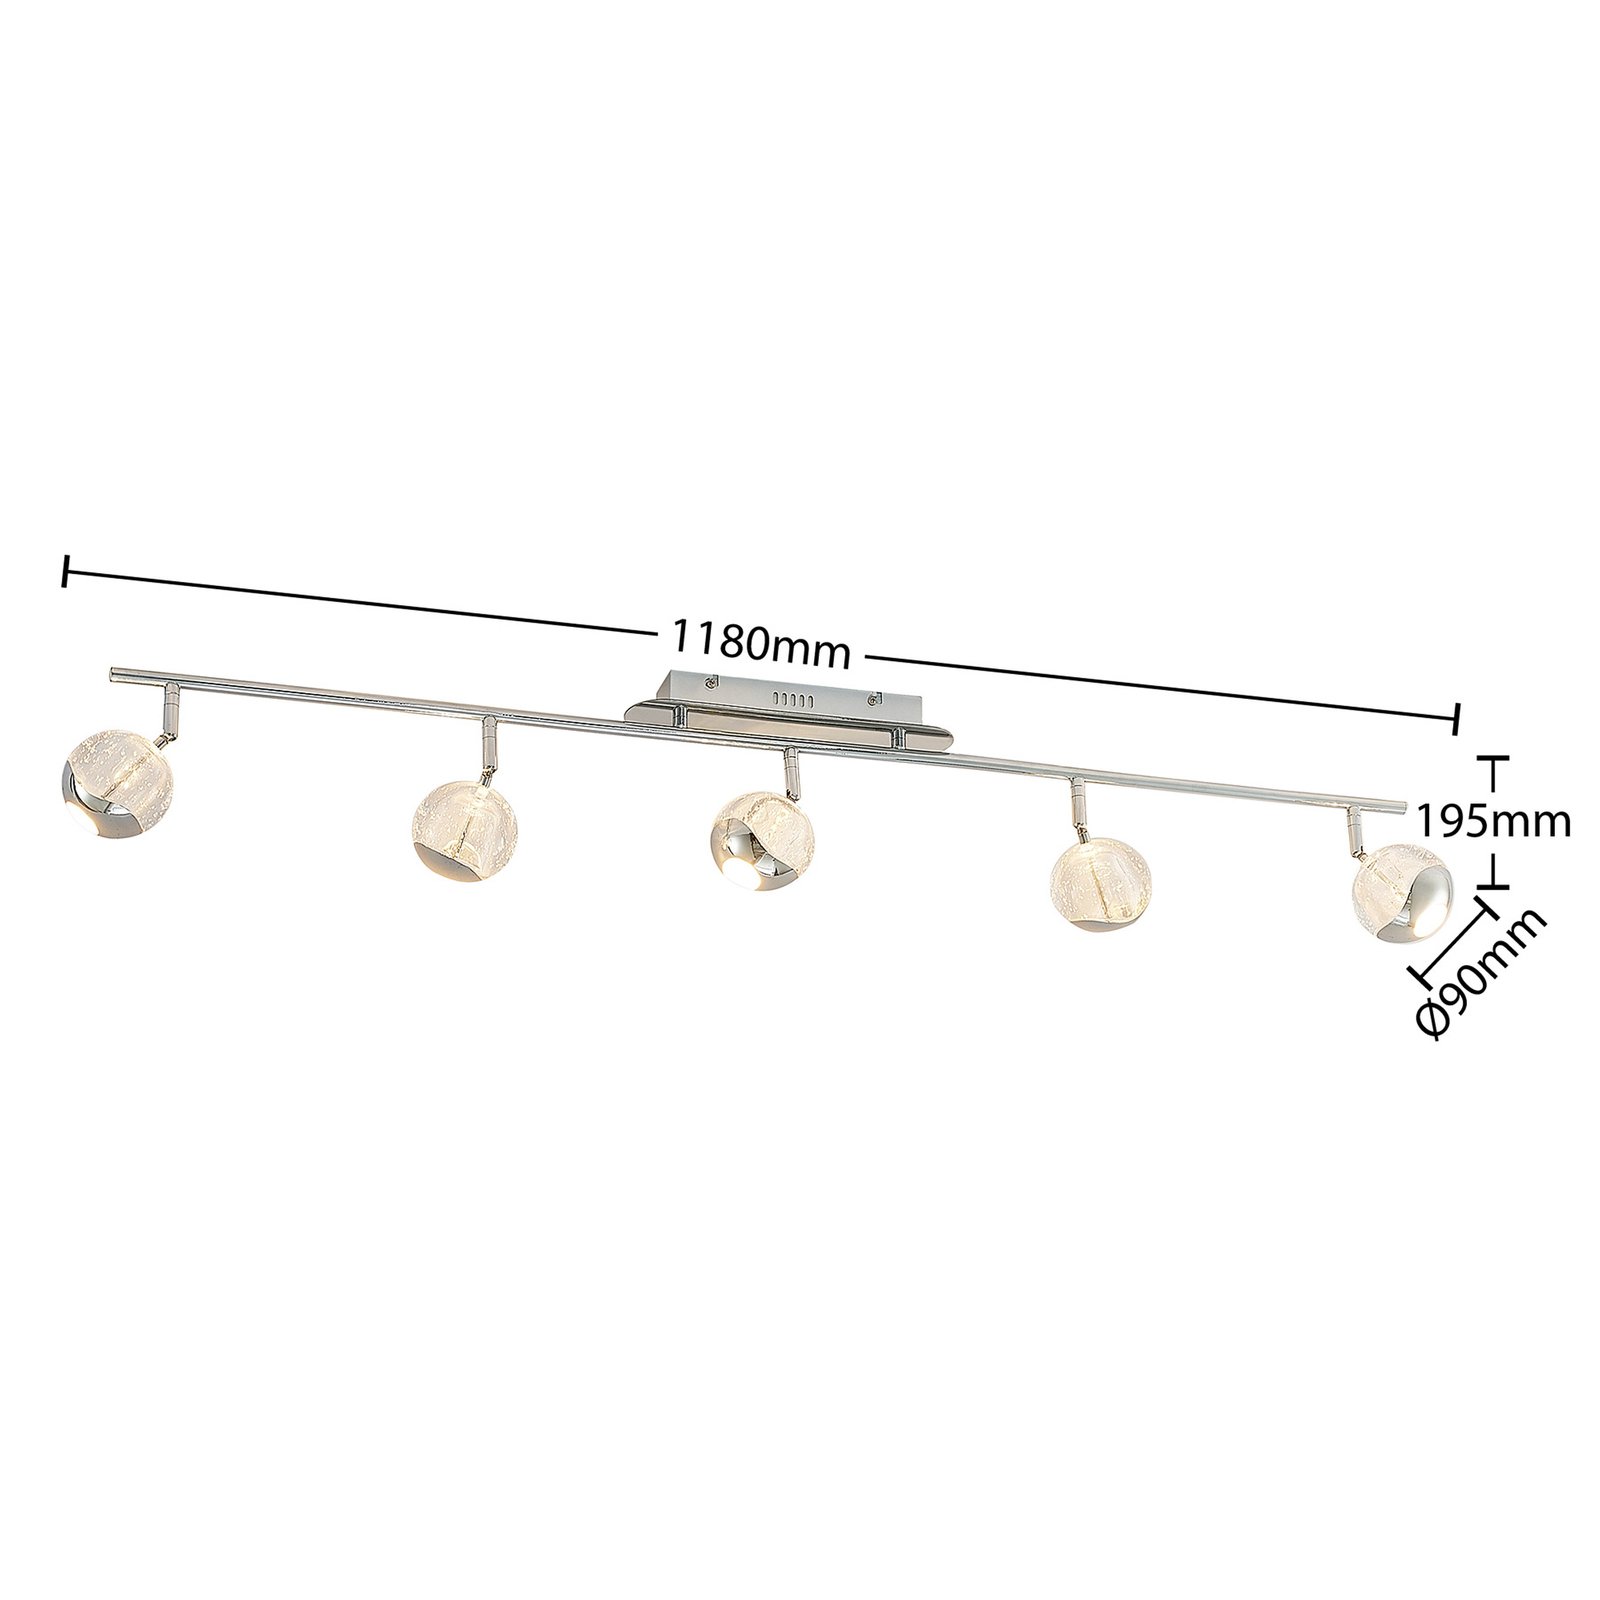 Lucande Kilio LED bodové osvětlení 5 zdroje chrom